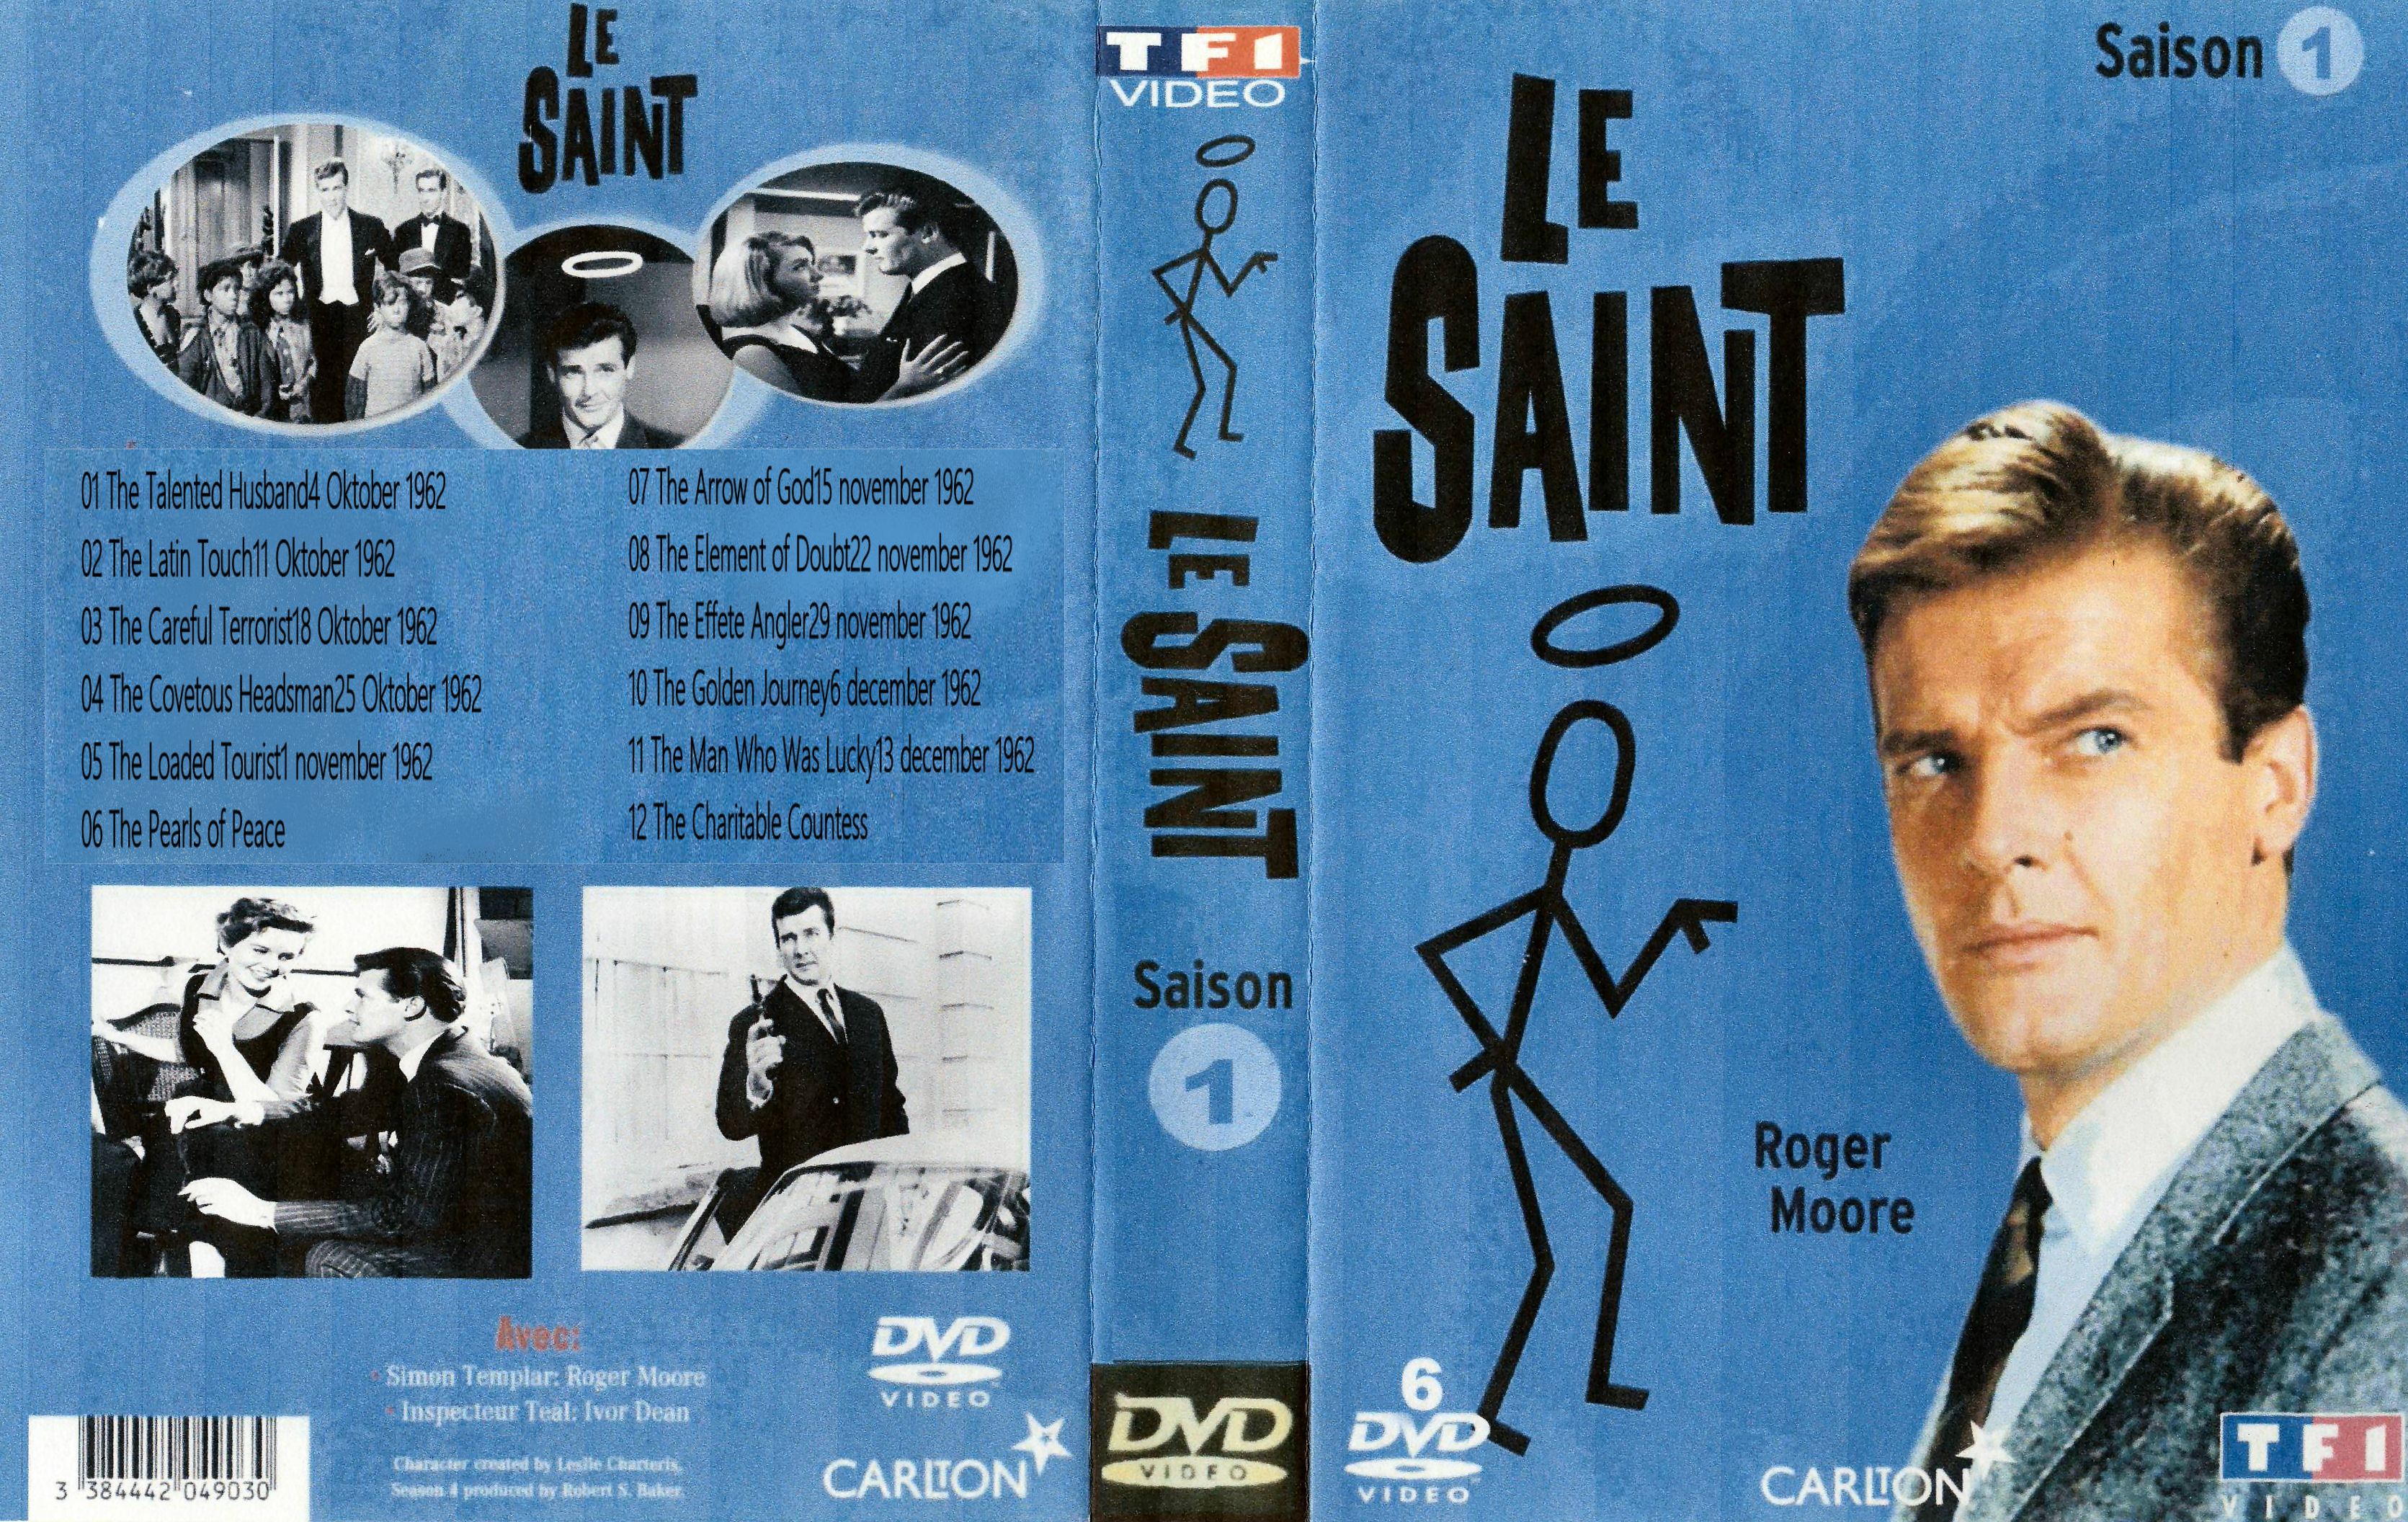 The Saint Seizoen 1 ( 1962 ) DvD 4 Laatste